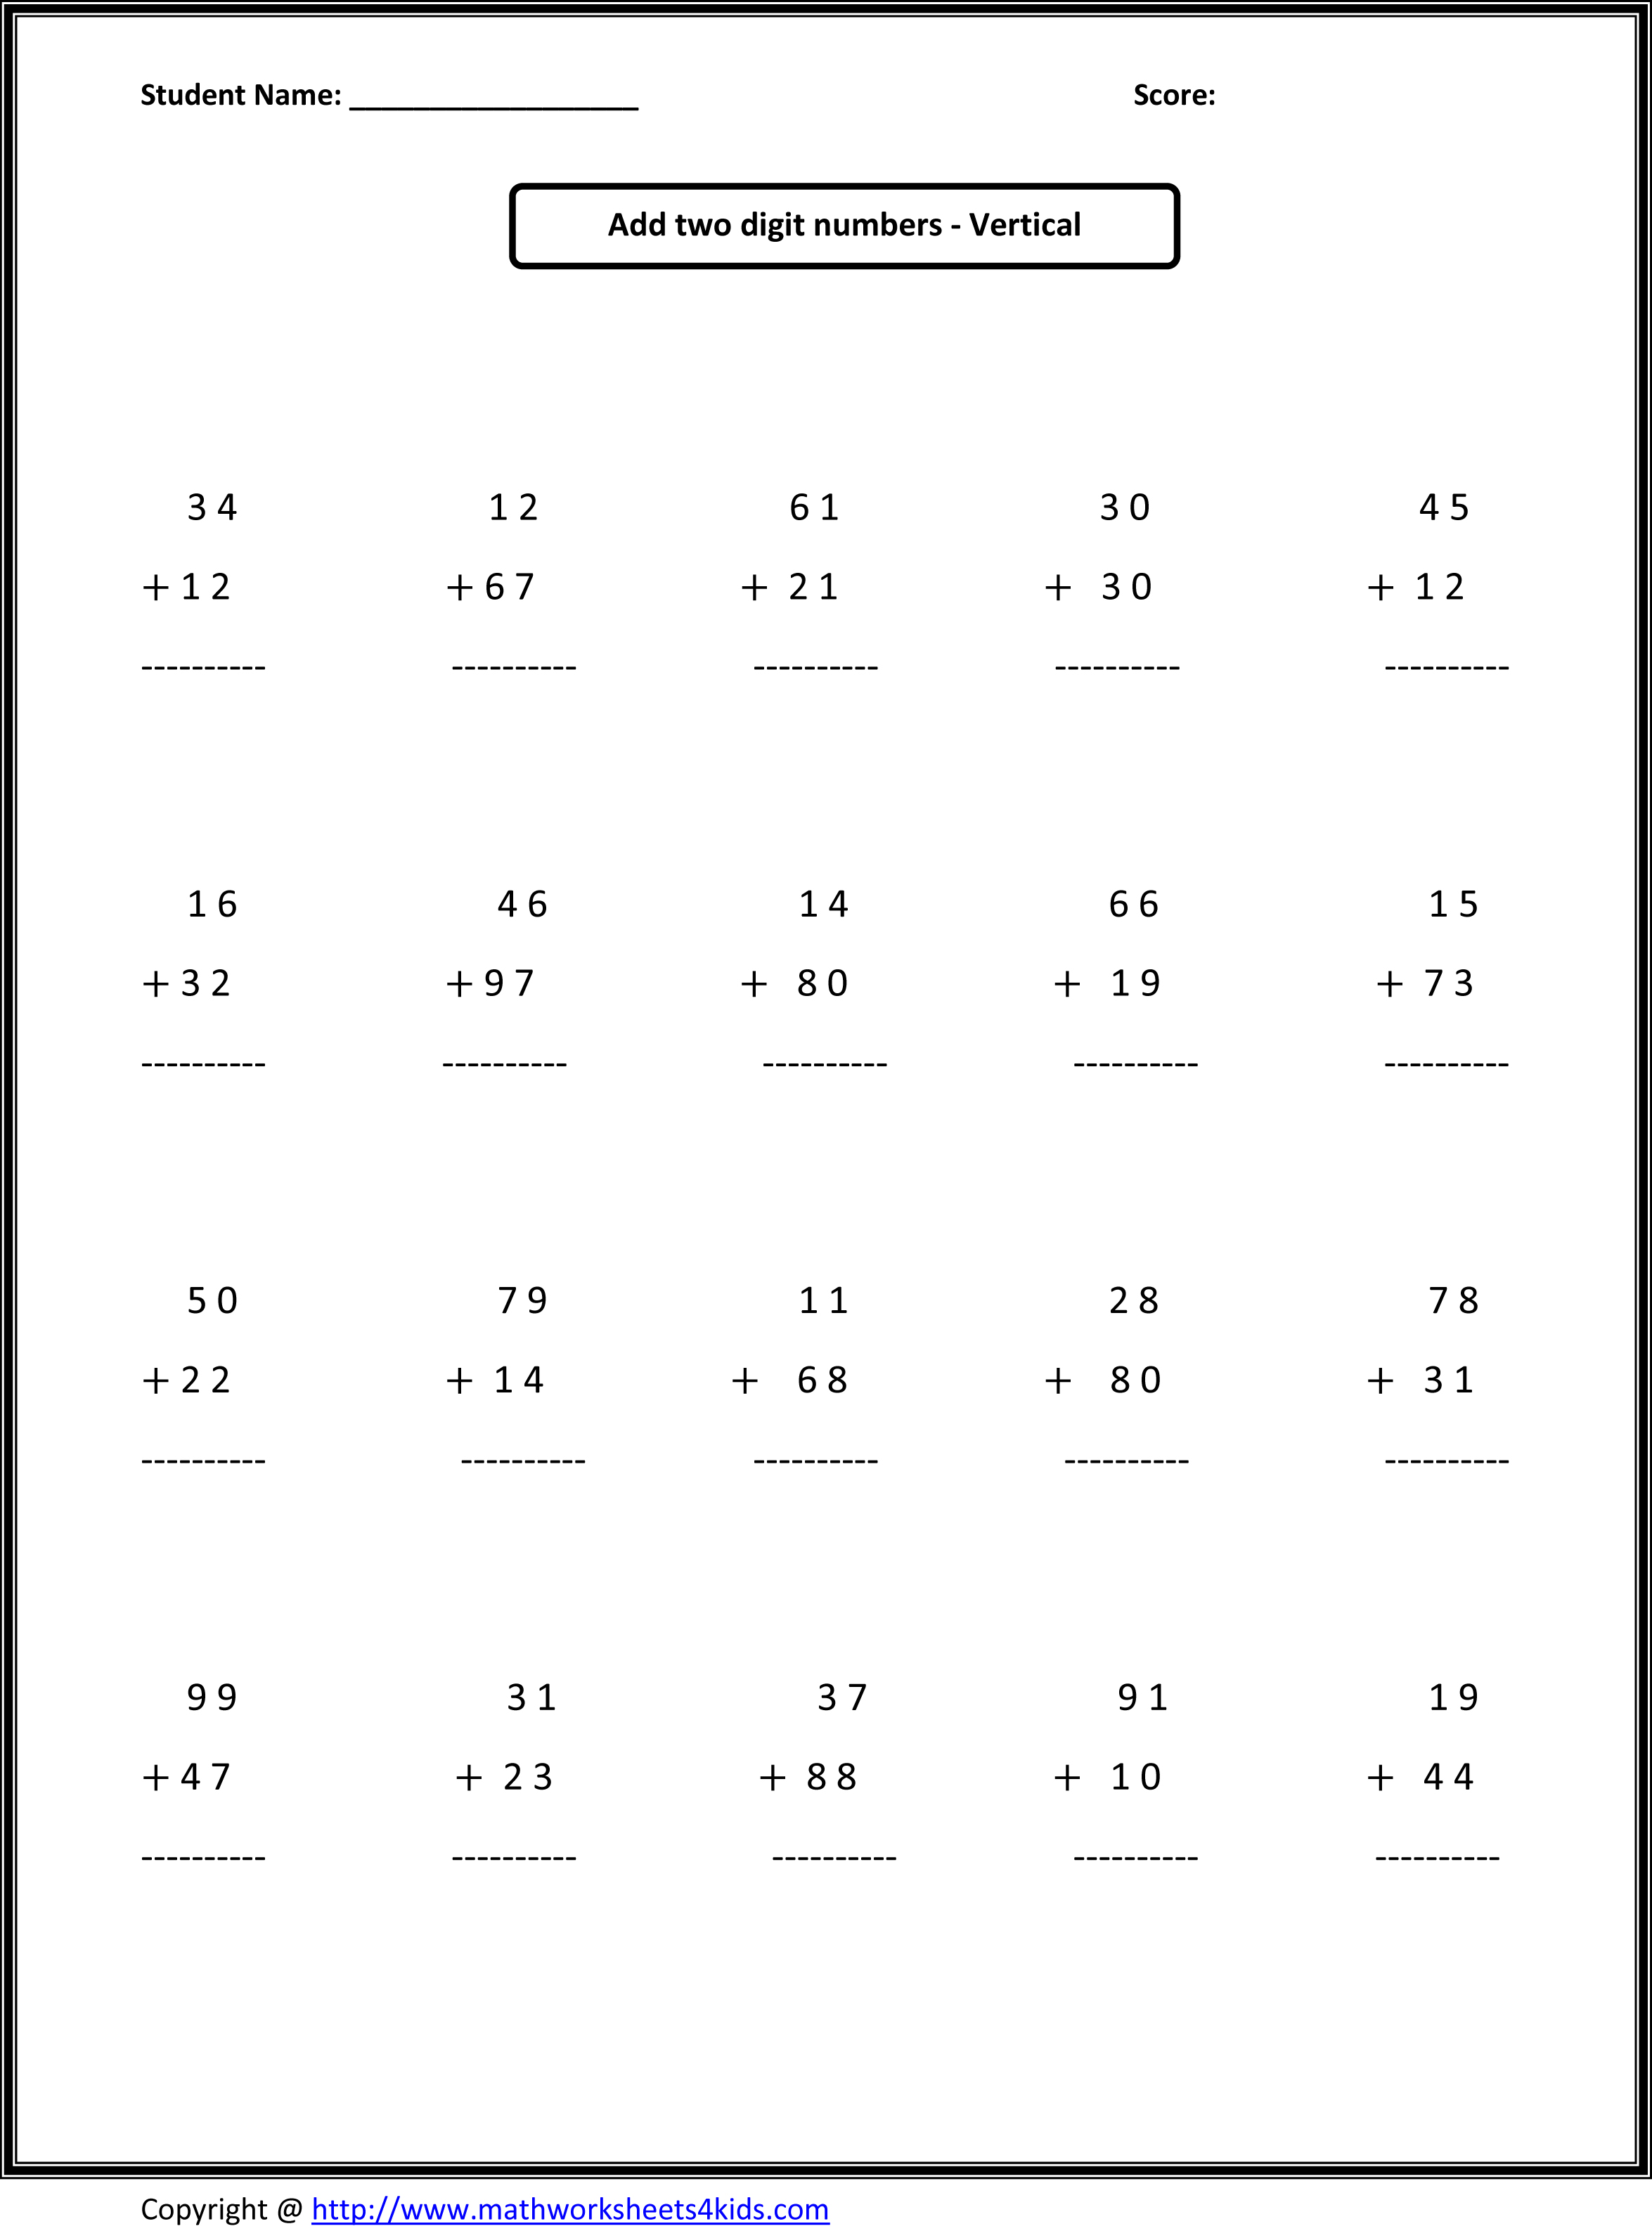 11 Images of 2nd Grade Math Worksheets Online